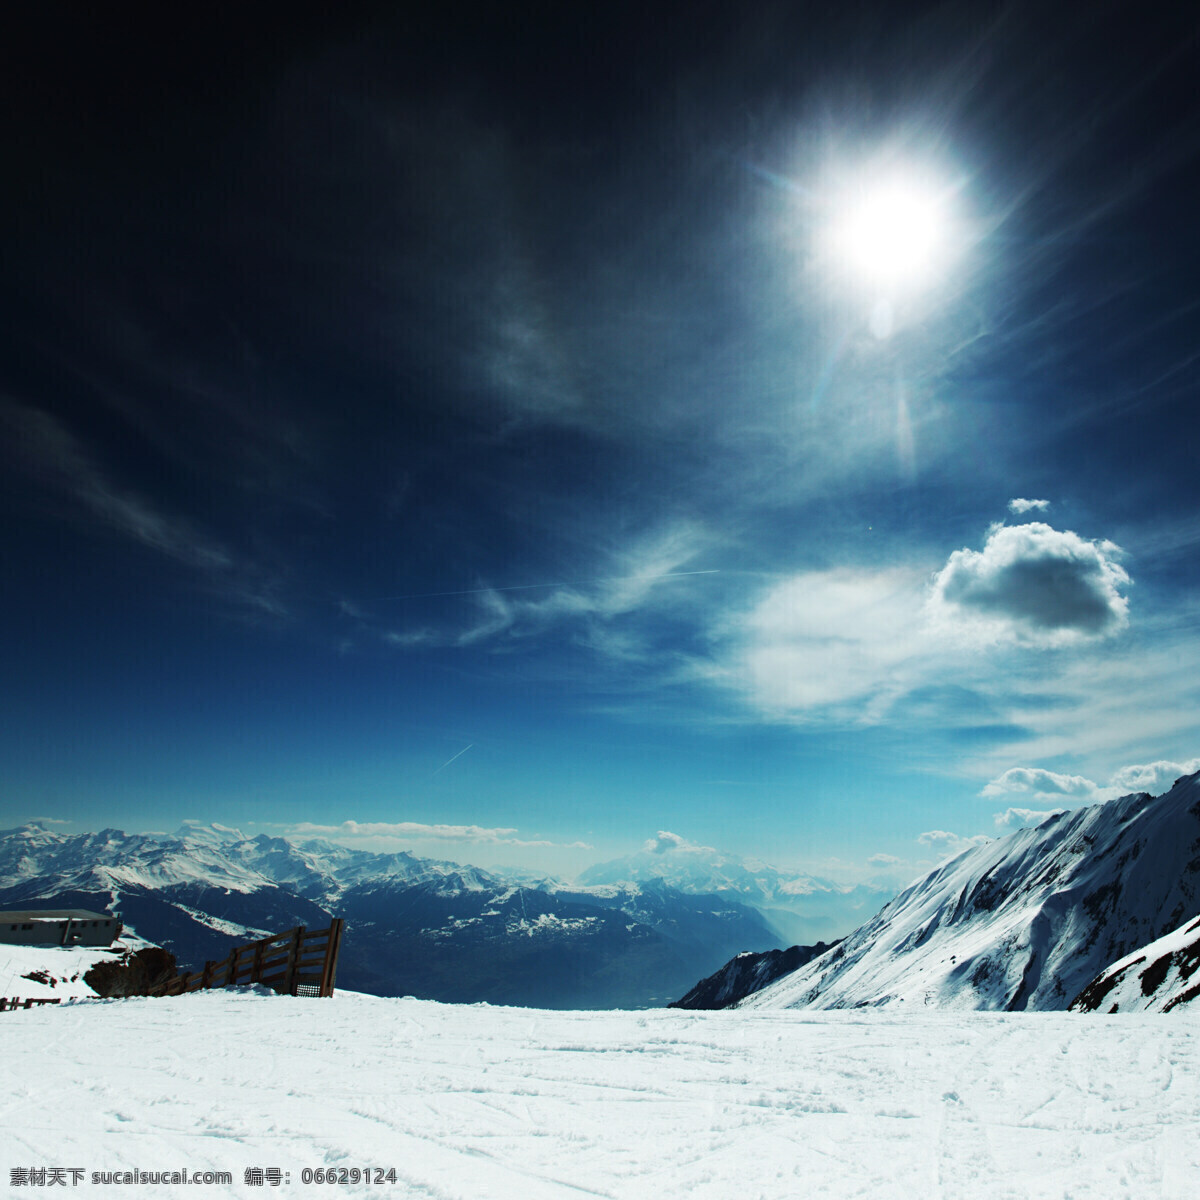 雪域高山 雪域 高山 高原 蓝天 阳光 山峰 云彩 高山滑雪场 自然景观 自然风景